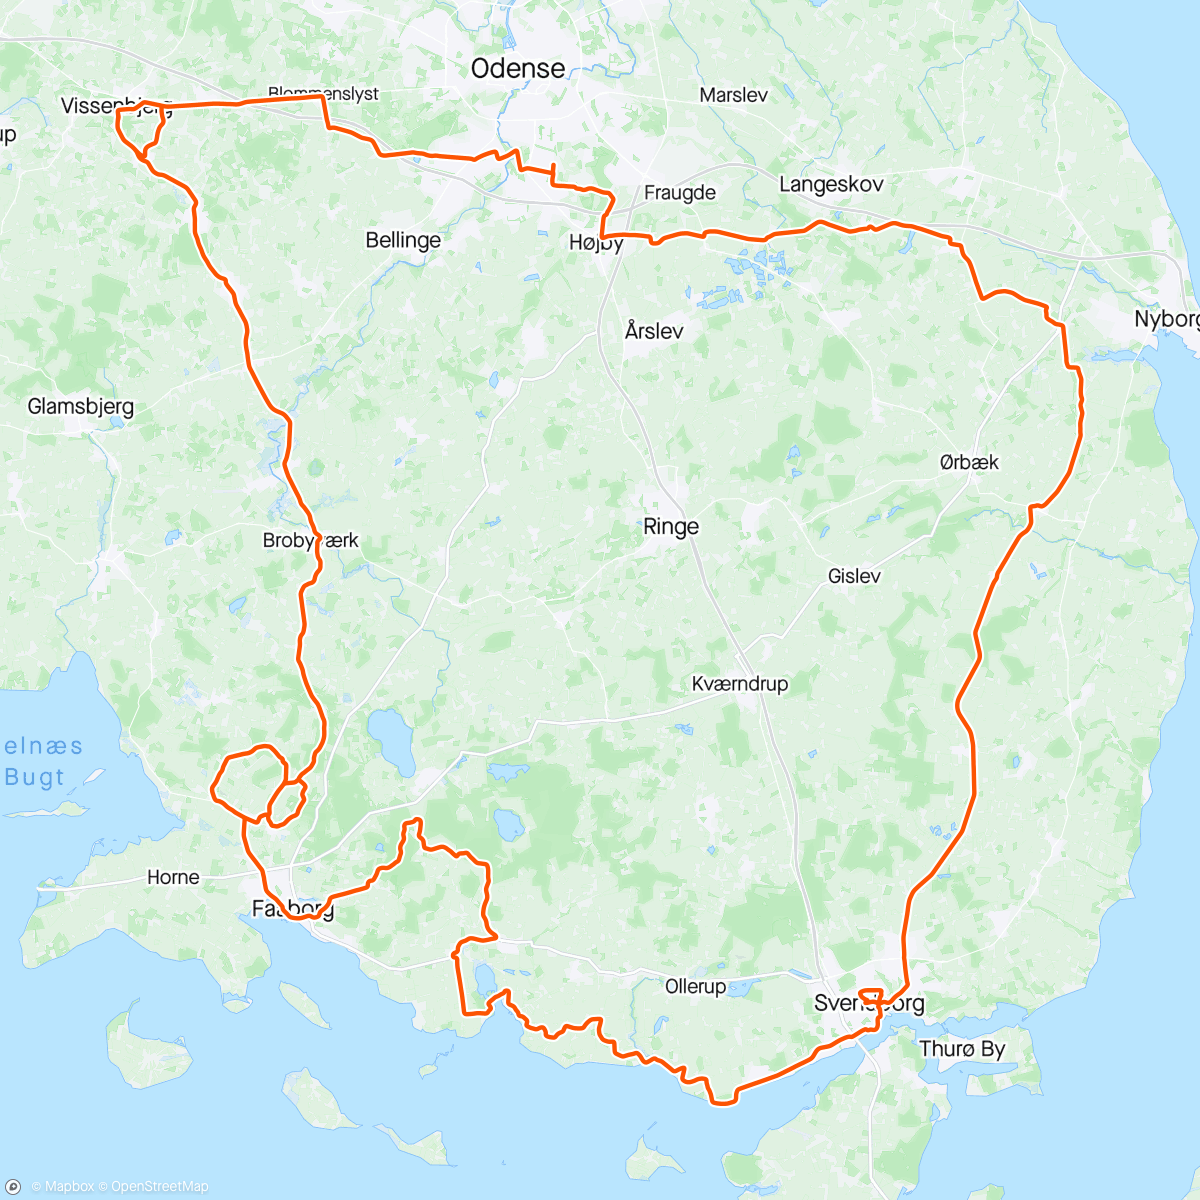 「2xGalgebakken, 2xGolfbakken, 2x Vissenbjerg」活動的地圖